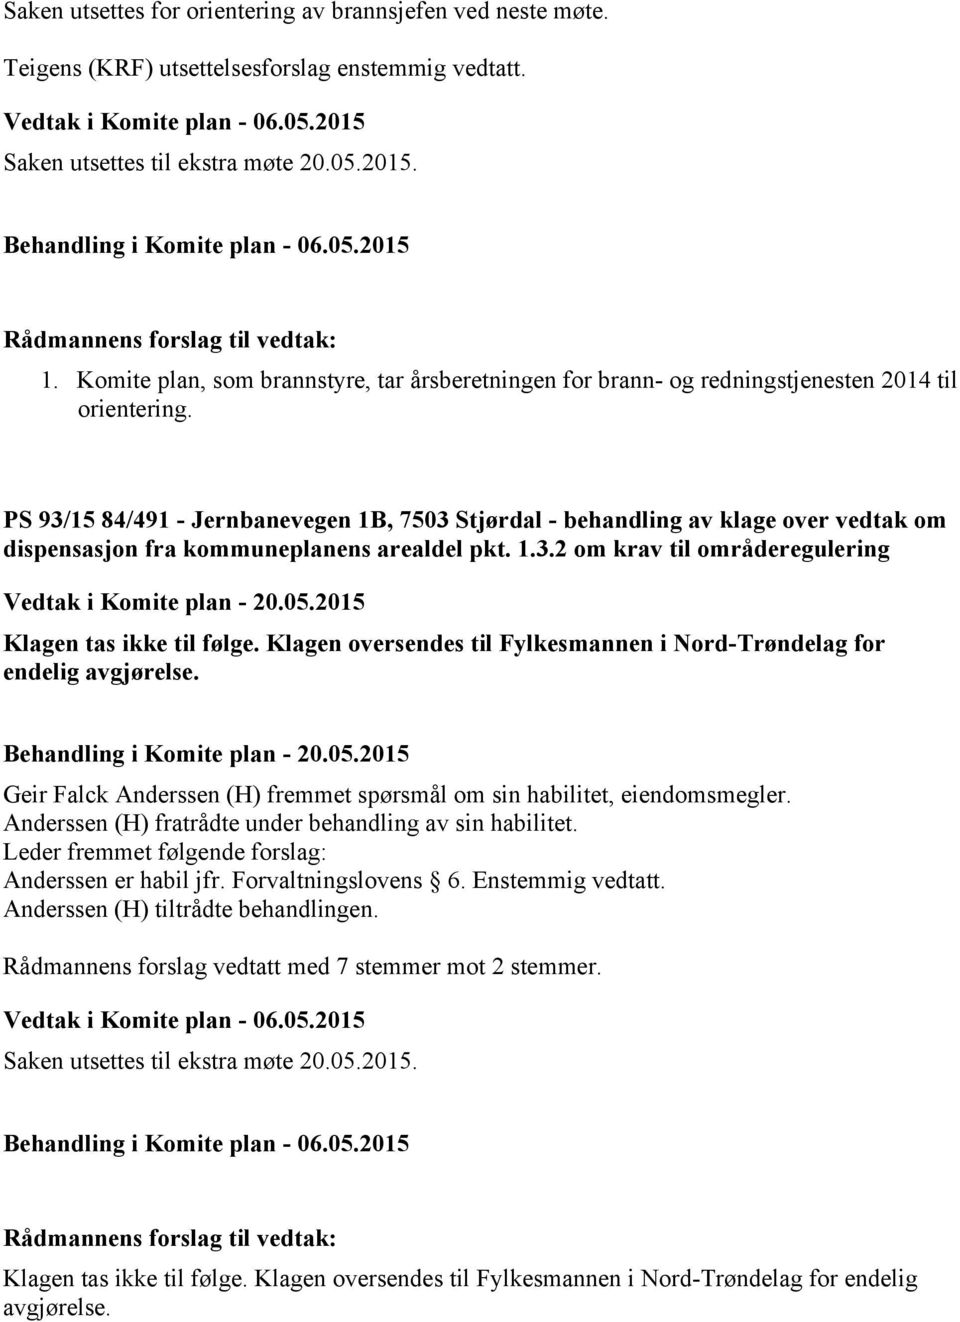 PS 93/15 84/491 - Jernbanevegen 1B, 7503 Stjørdal - behandling av klage over vedtak om dispensasjon fra kommuneplanens arealdel pkt. 1.3.2 om krav til områderegulering Klagen tas ikke til følge.